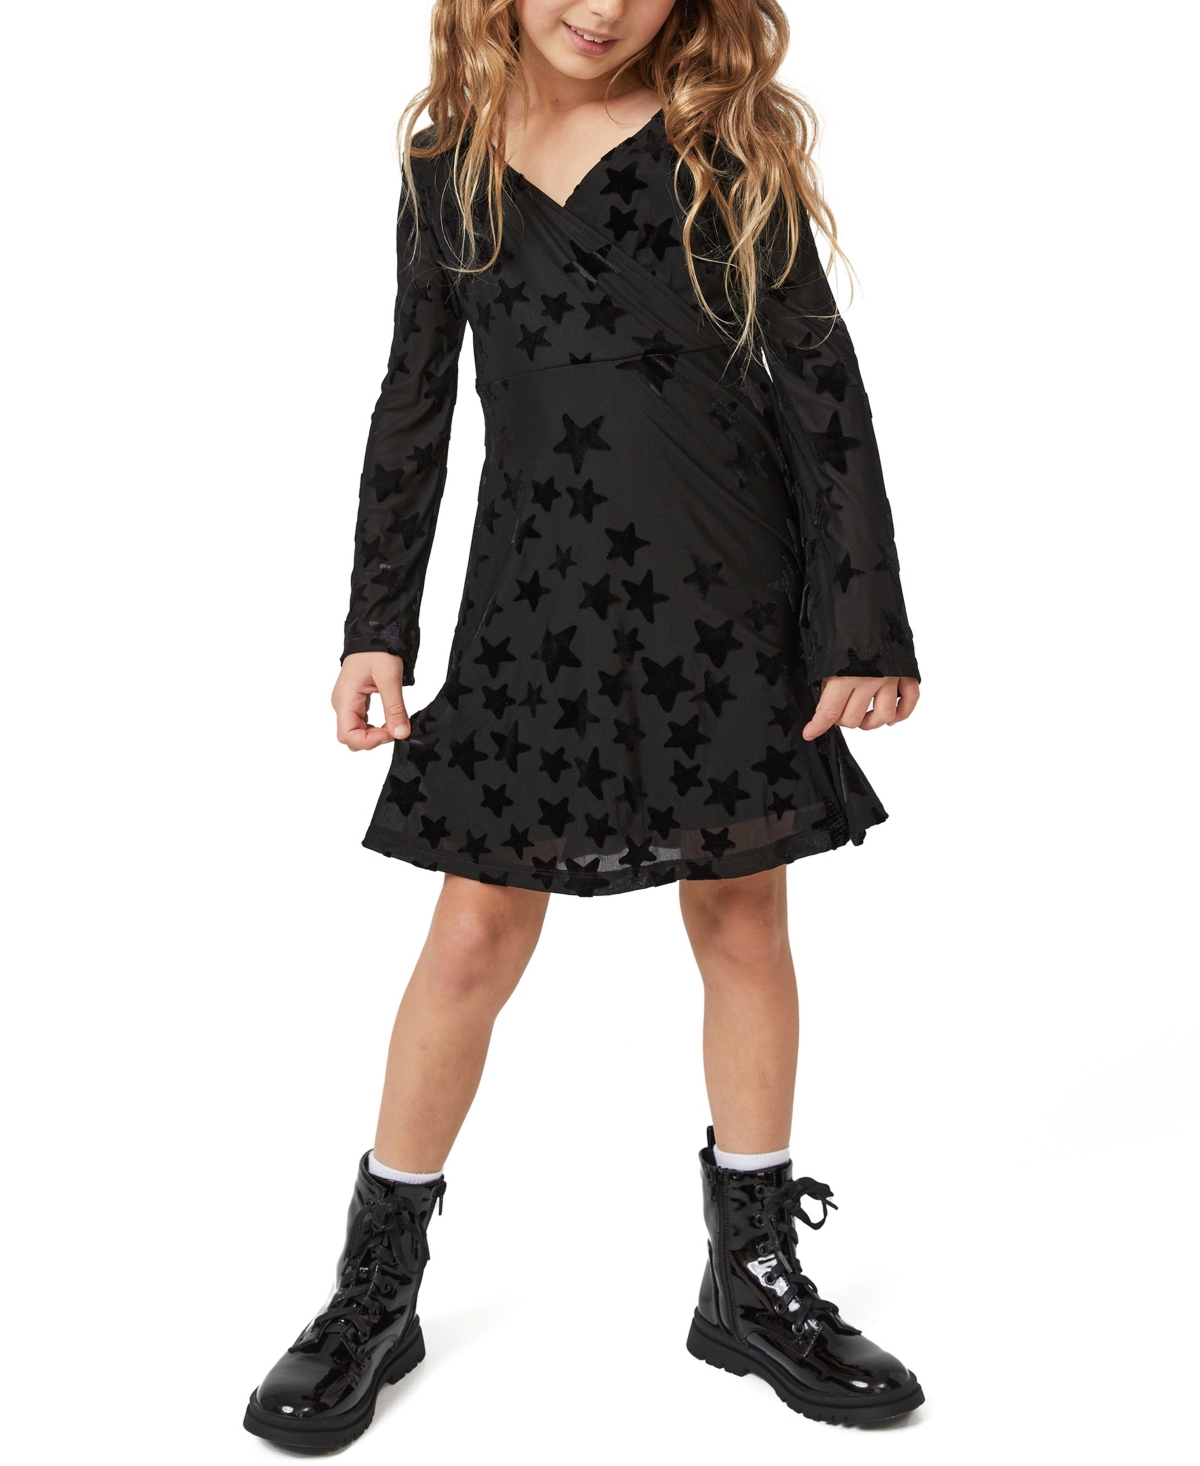 Cotton On Toddler Girls Rochelle Long Sleeve Dress In Black/scattered Stars